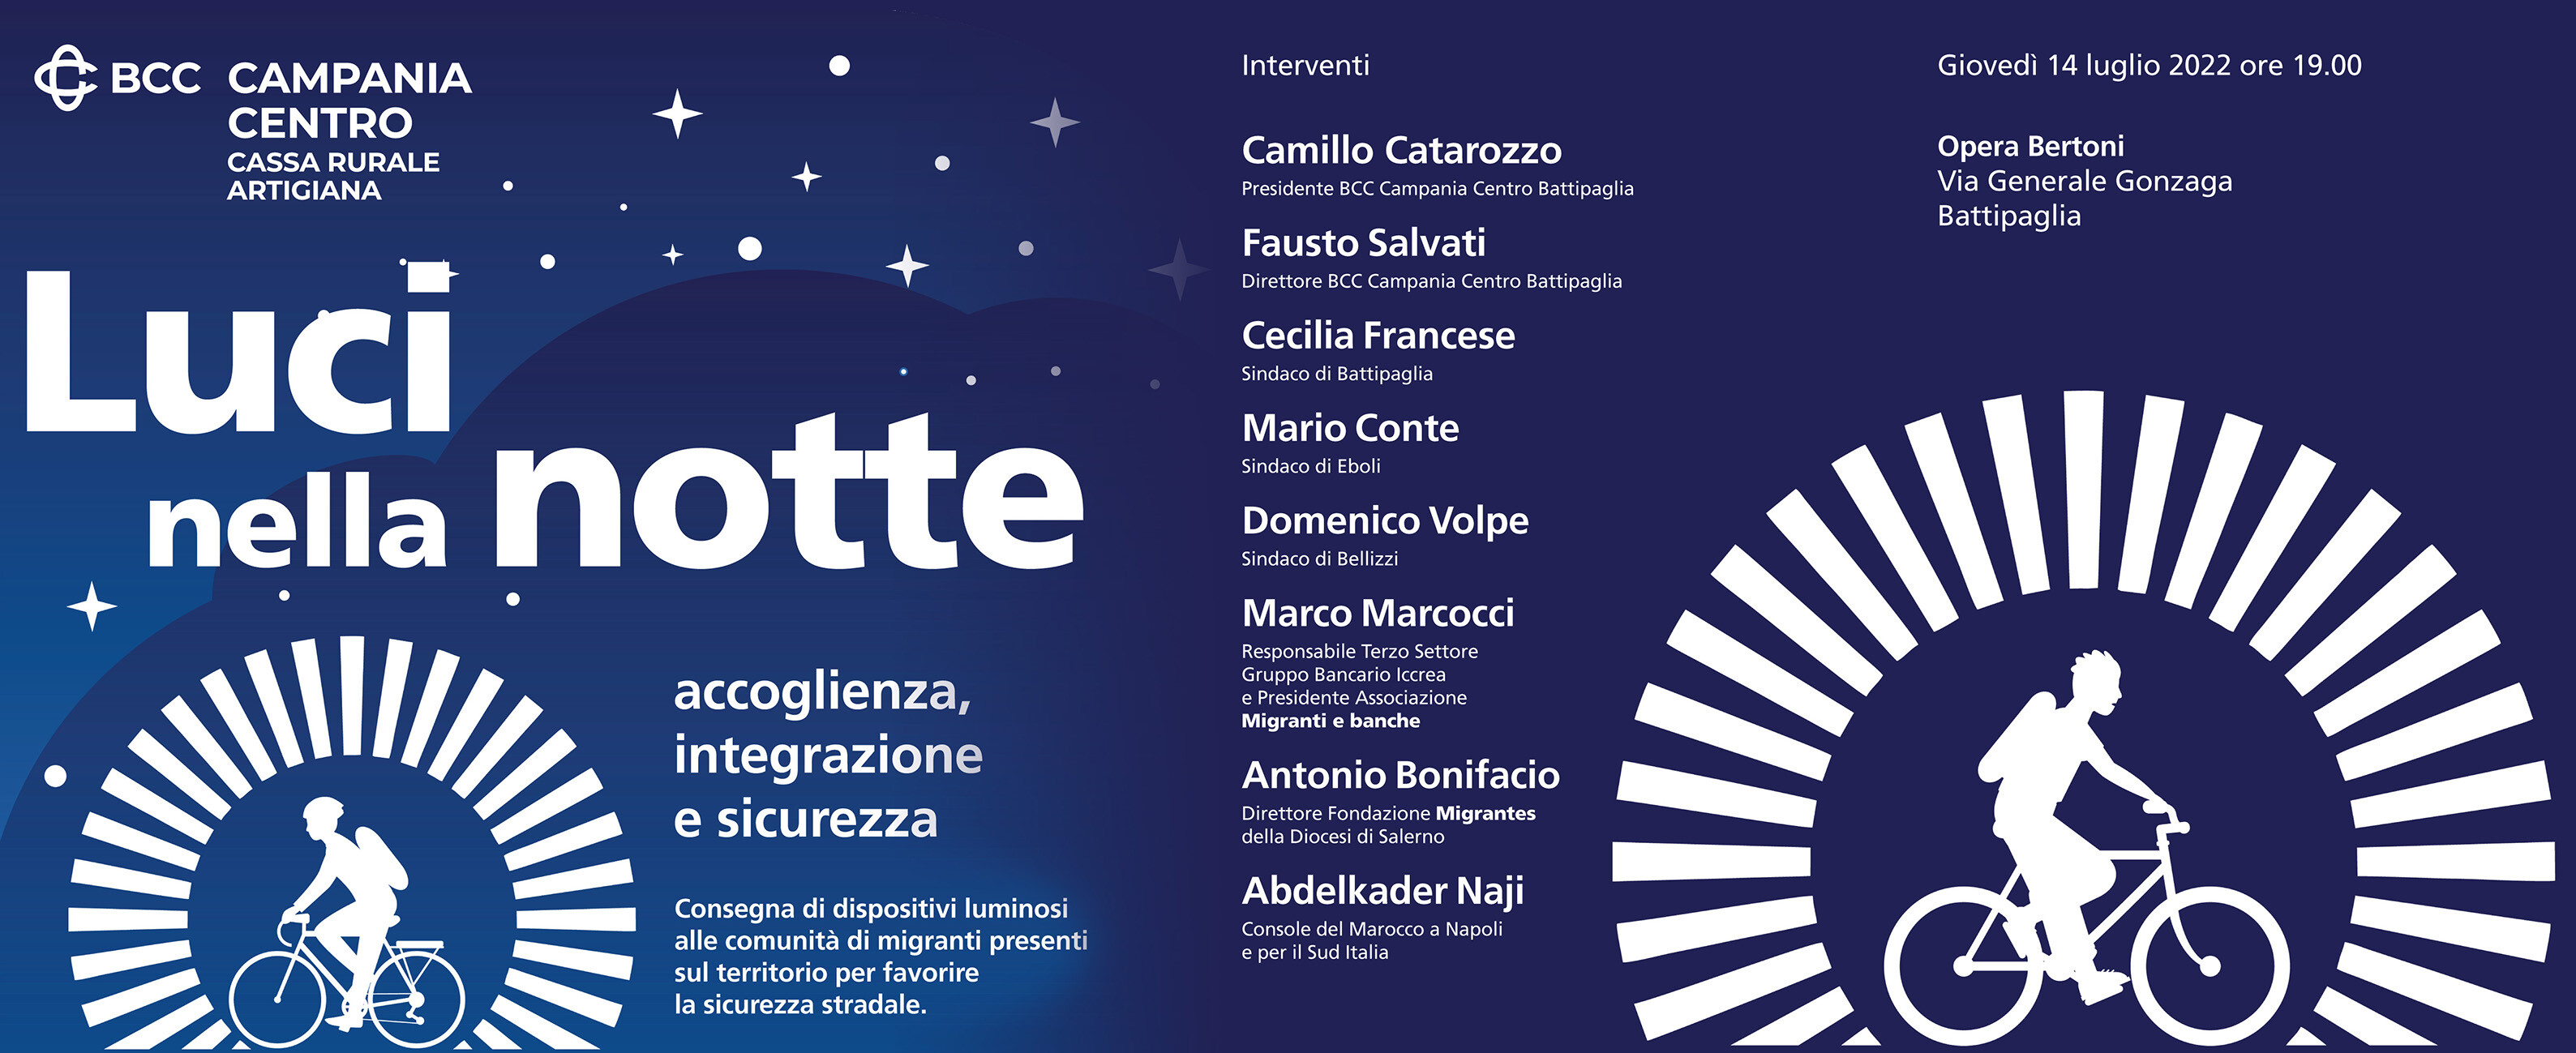 Battipaglia, il 14 luglio all’Opera Bertoni la cerimonia di consegna dei dispositivi luminosi alle comunità di migranti per favorire la sicurezza stradale